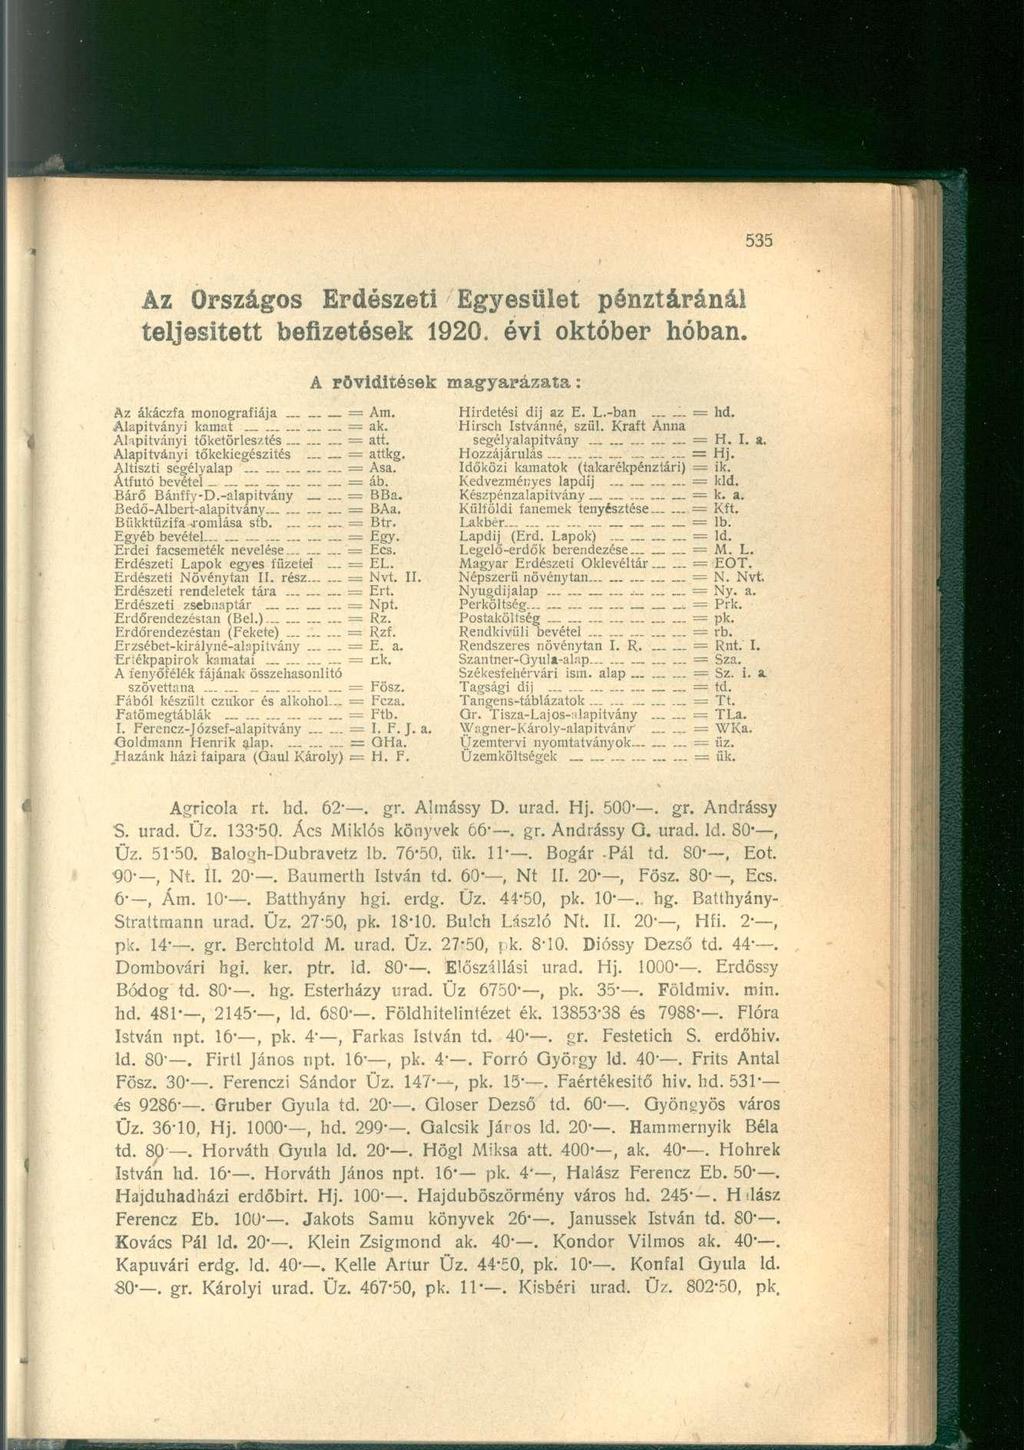 Az Országos Erdészeti Egyesület pénztáránál teljesitett befizetések 1920. évi október hóban.